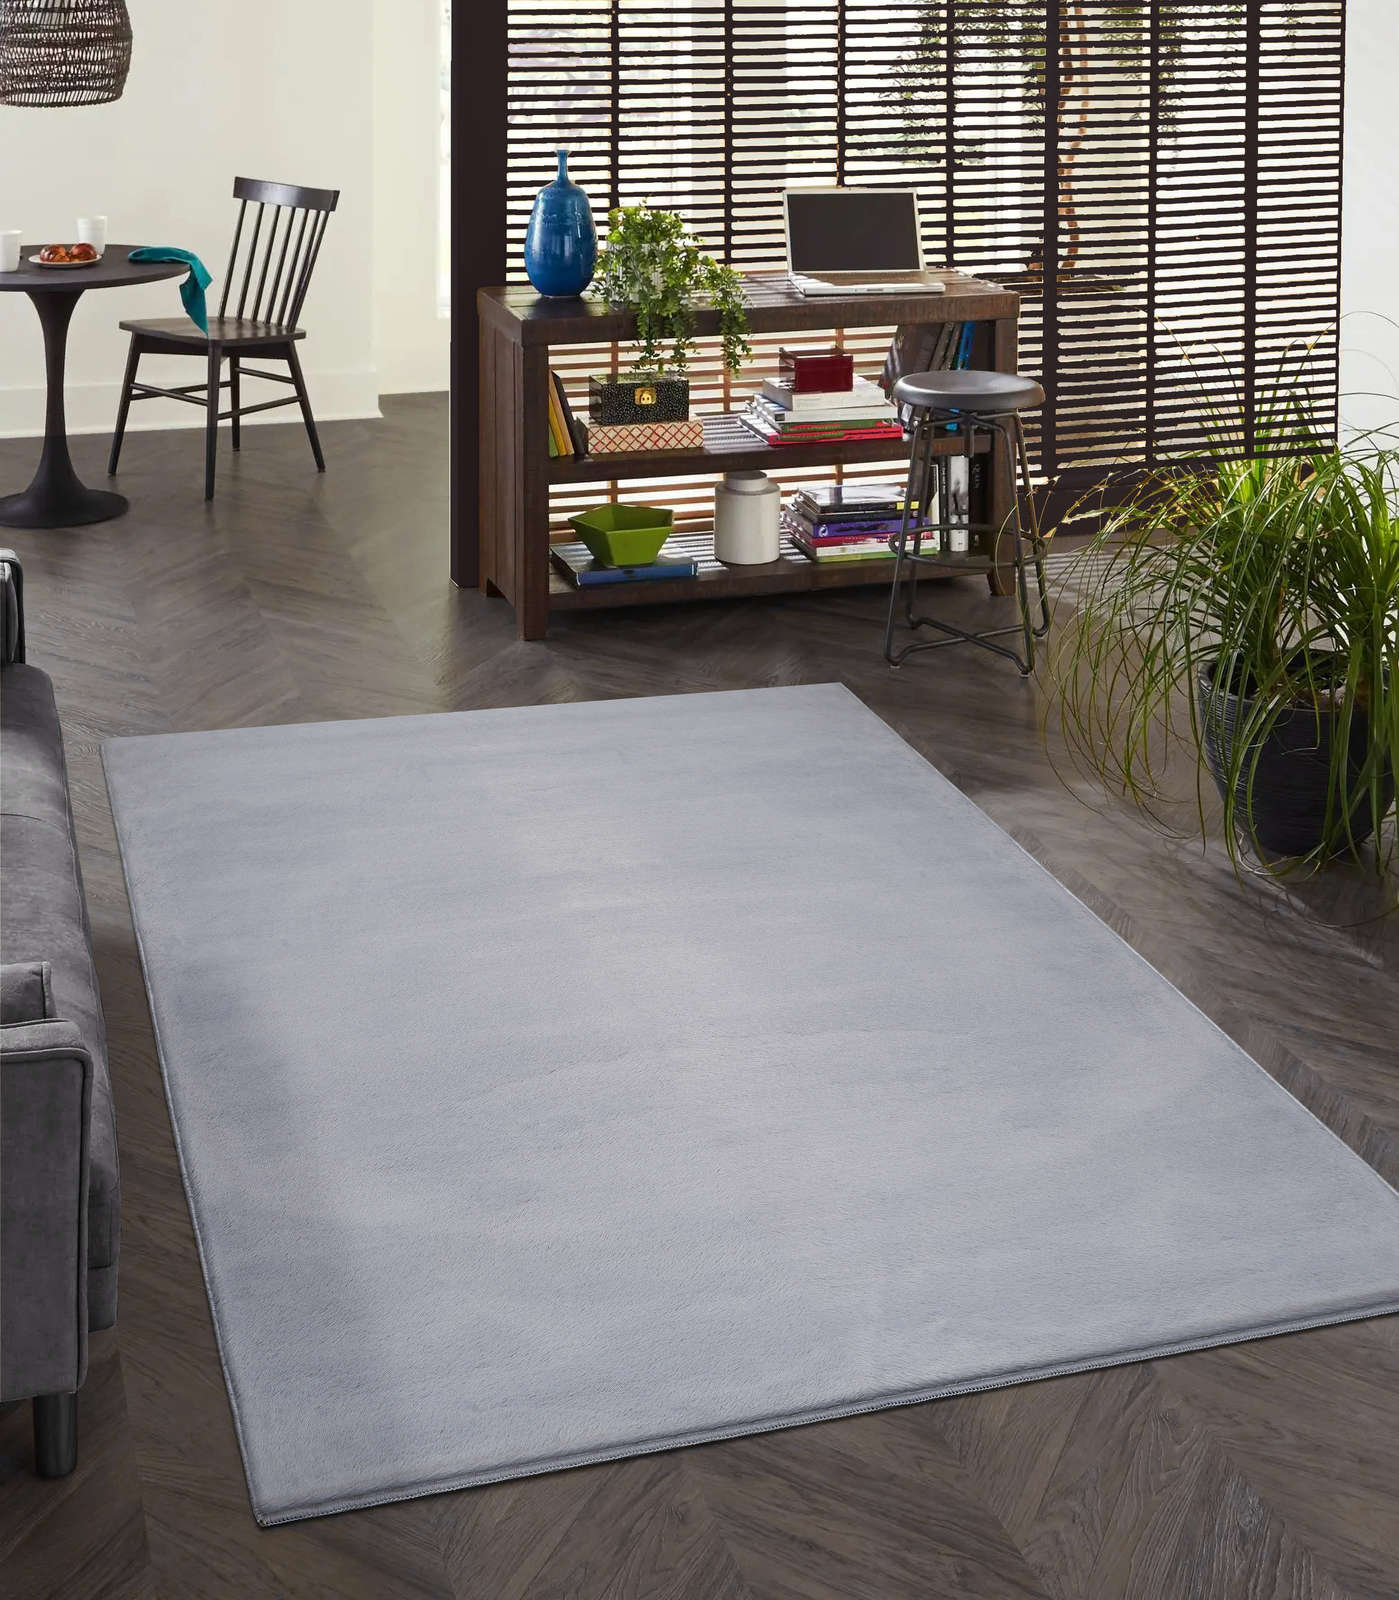             Angenehmer Hochflor Teppich in sanften Grau – 340 x 240 cm
        